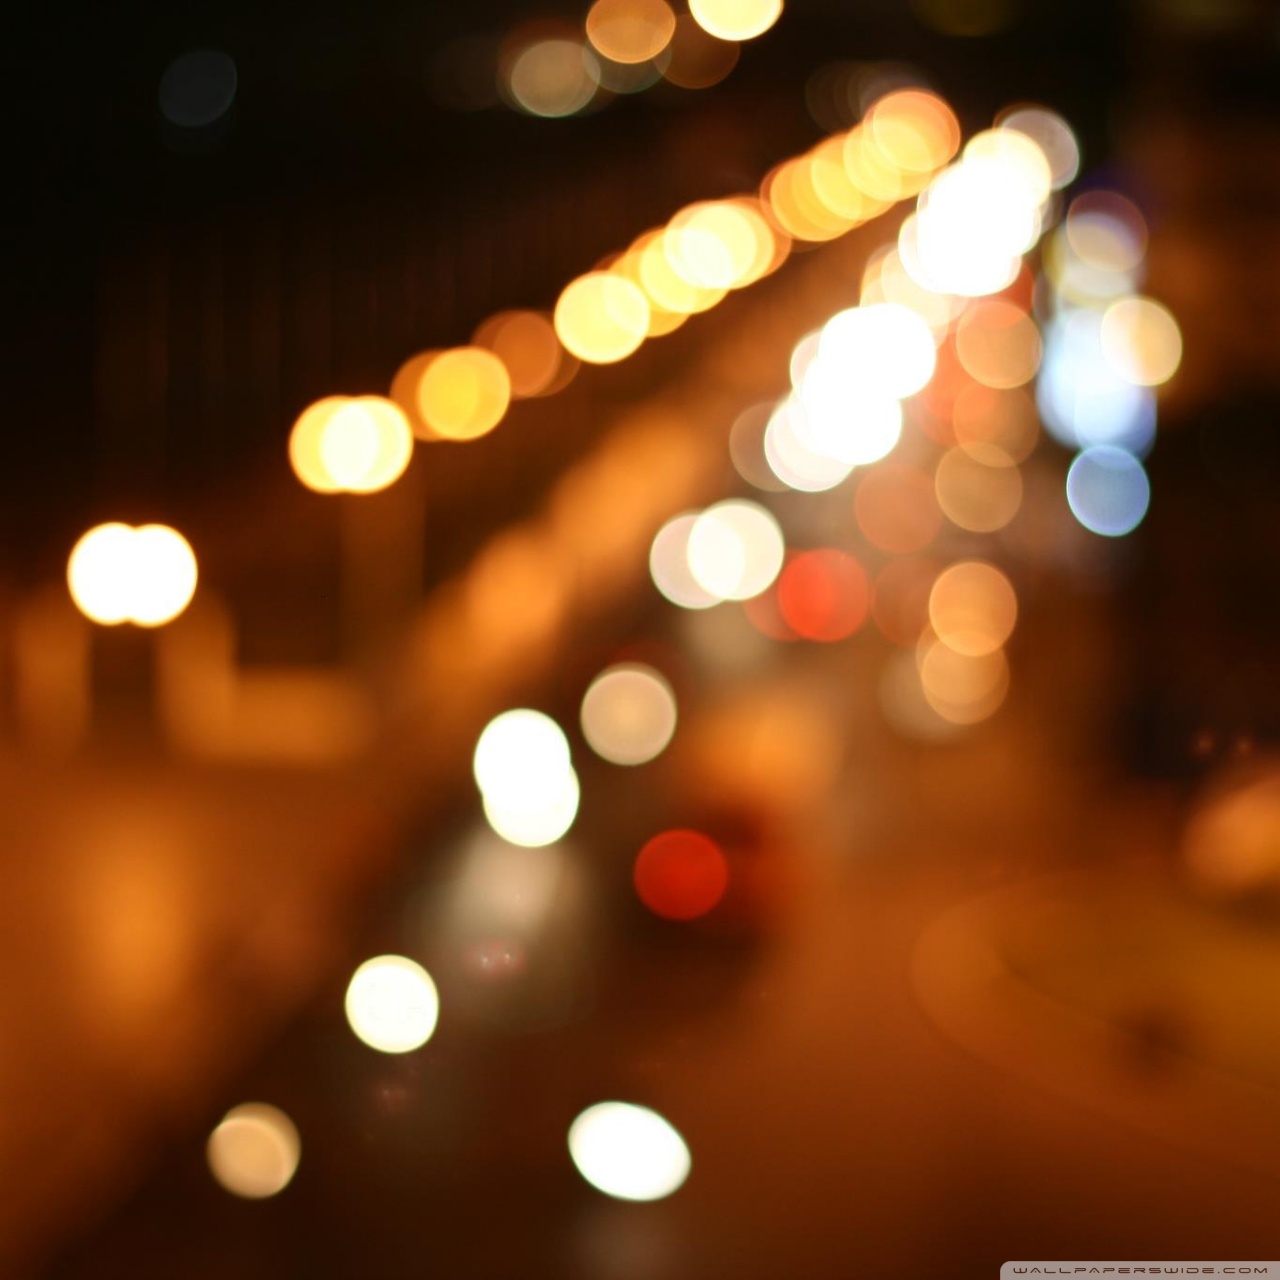 Blur Light Wallpaper Iphone - HD Wallpaper 